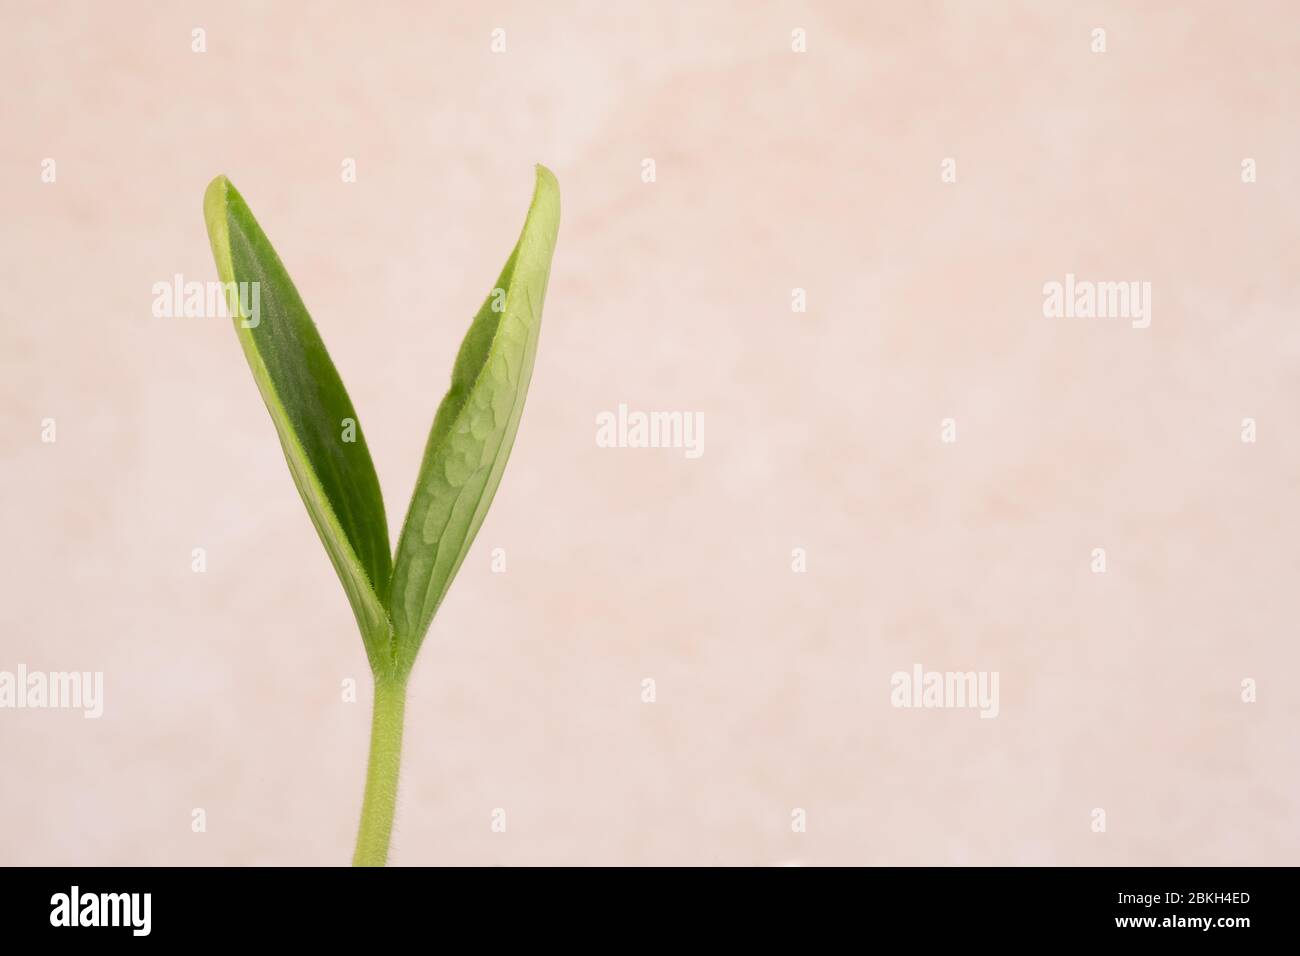 Nahaufnahme eines Zucchini-Pflanzenkeimlings auf einem hellen Hintergrund Stockfoto